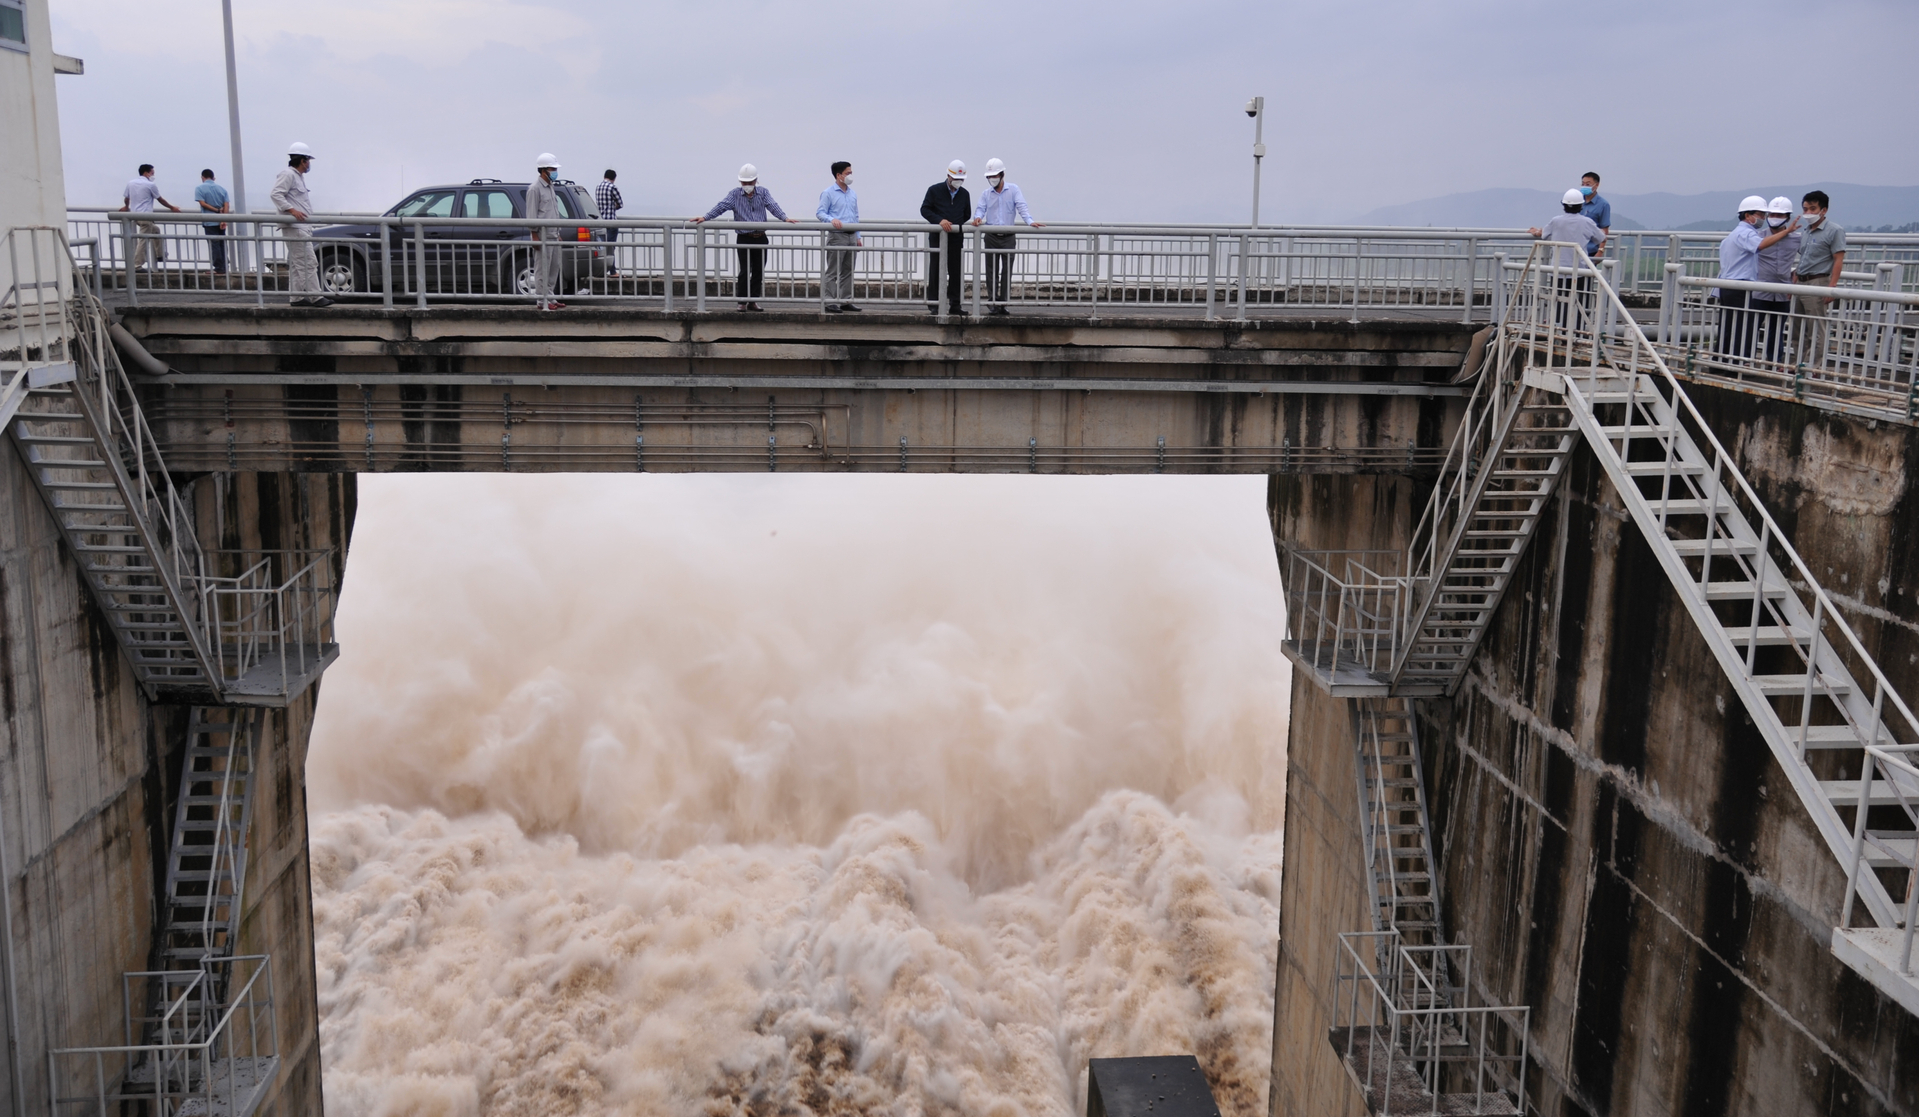 Để đảm bảo an toàn cho hạ du, ngành nông nghiệp Phú Yên và Khánh Hòa phối hợp vận hành điều tiết lũ các hồ chứa thủy lợi, thuỷ điện trên lưu vực sông Ba. Ảnh: KS.